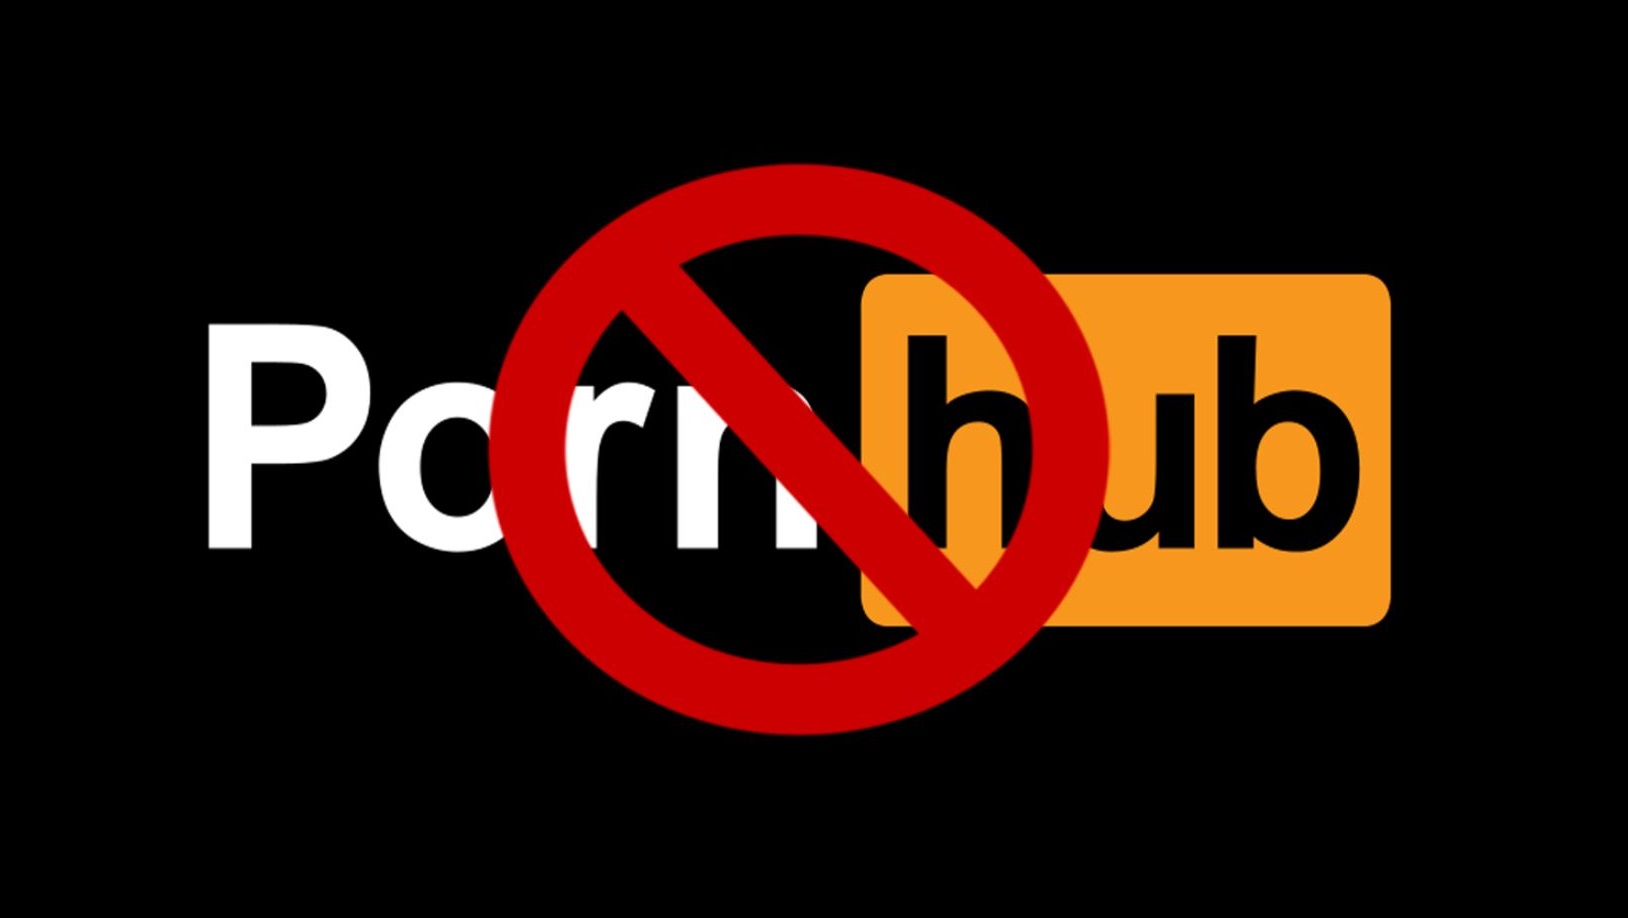 ลงดาบ! Youtube สั่งแบนช่อง Pornhub เนื่องจากละเมิดนโยบายหลายข้อ!